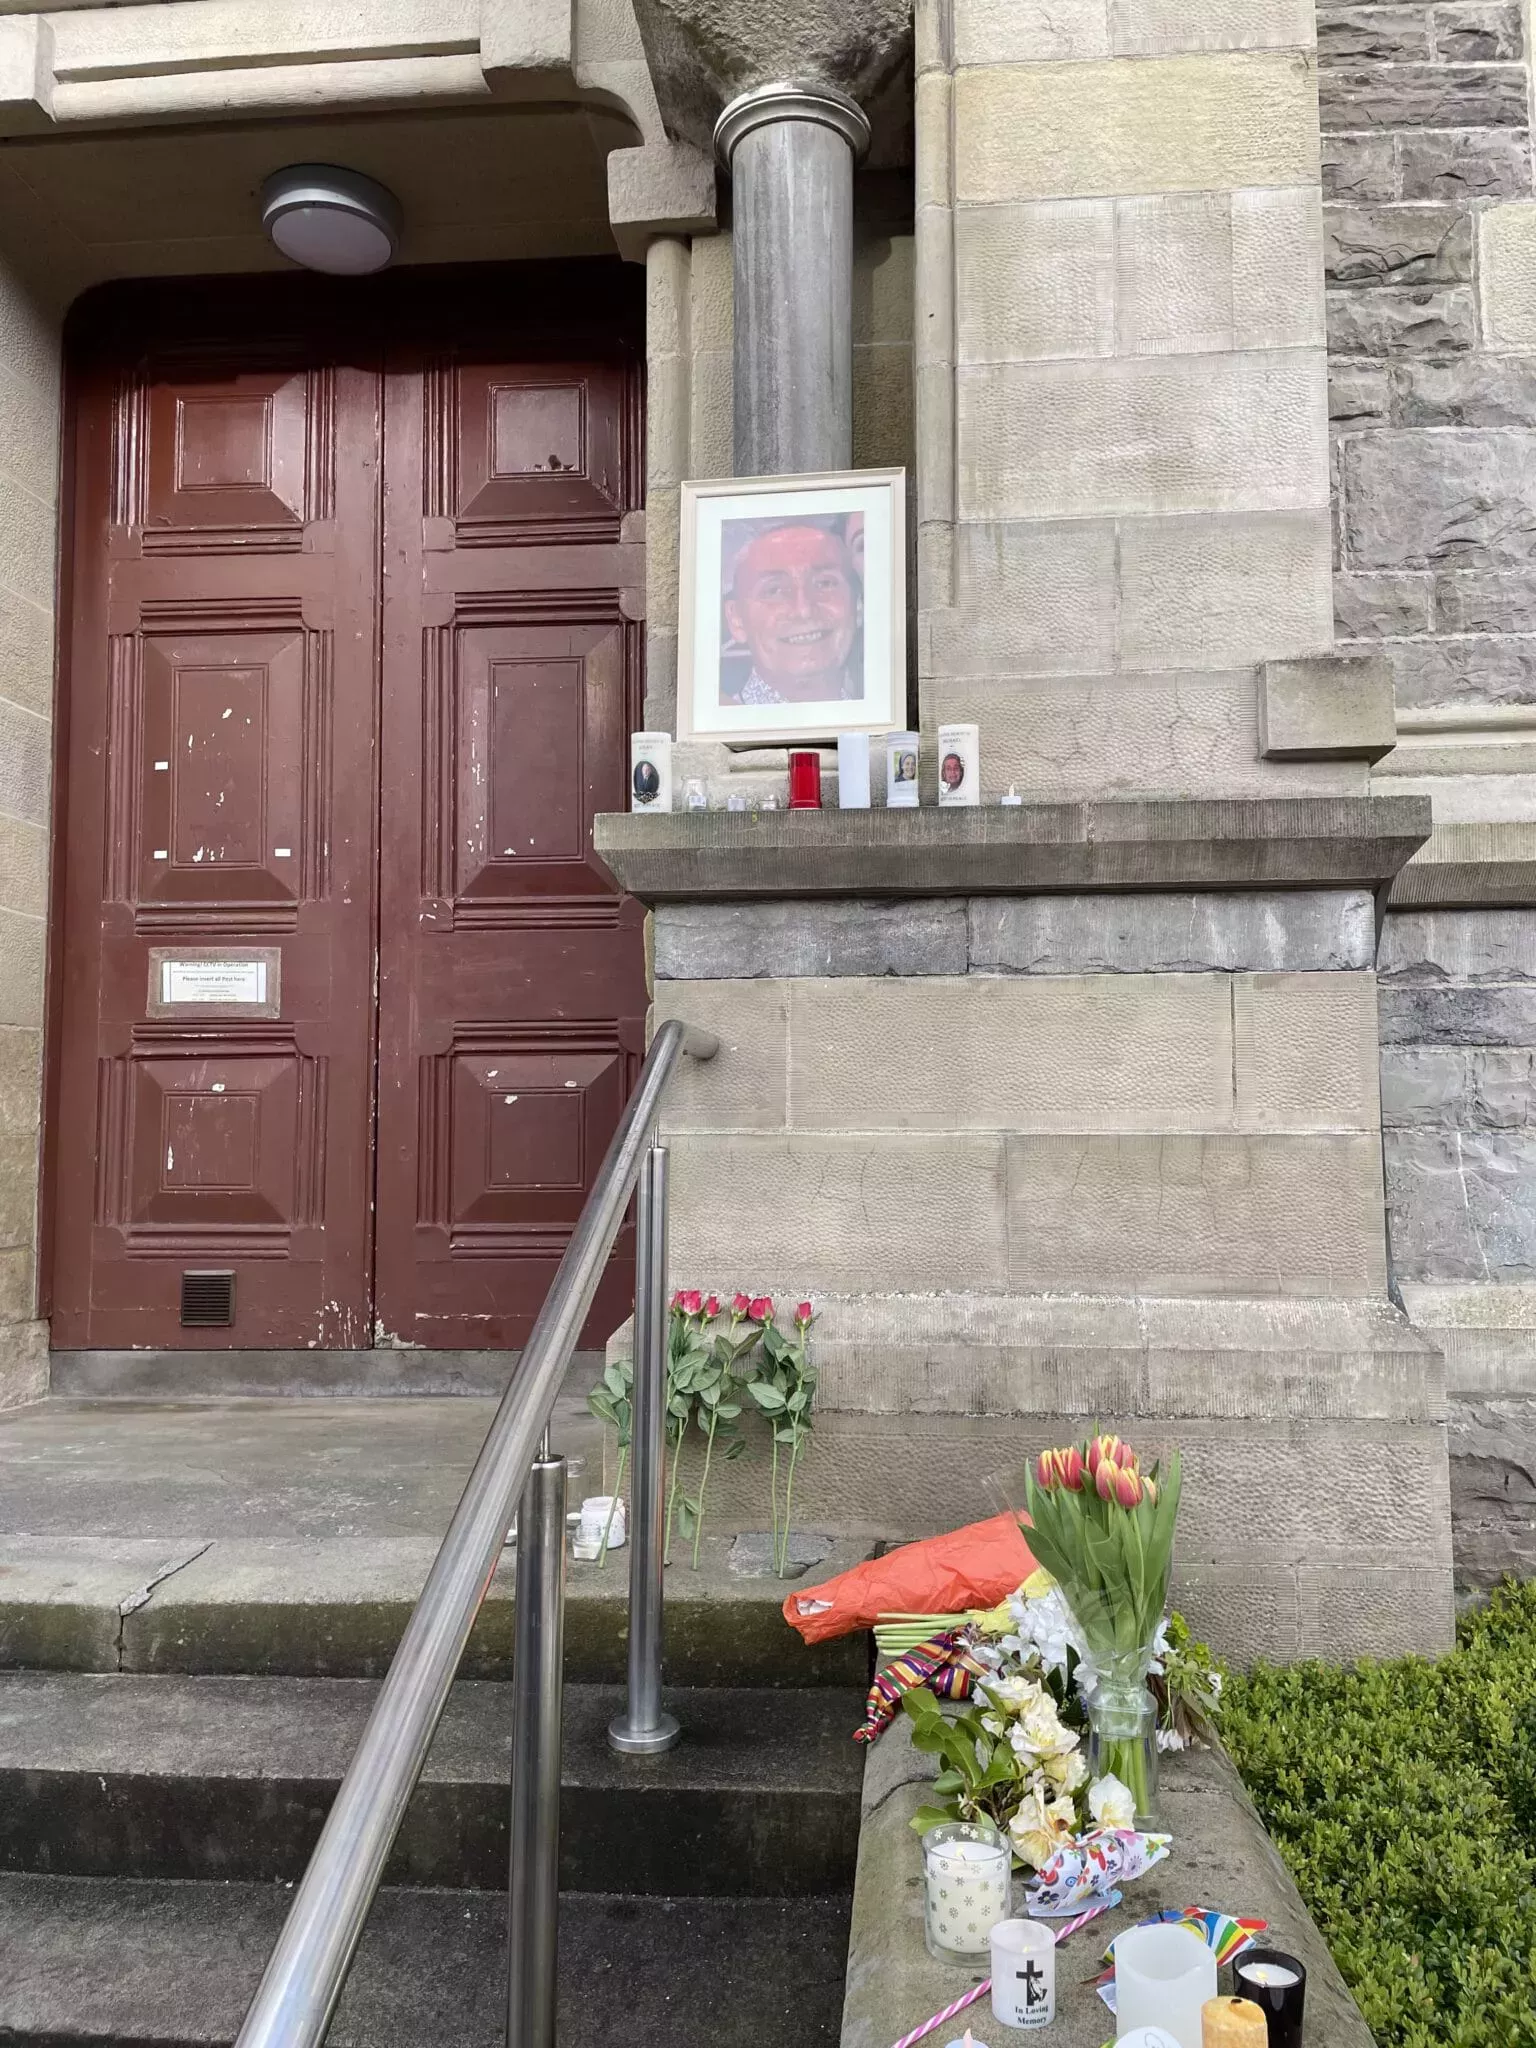 Cientos de personas se reúnen en Sligo para honrar a los homosexuales asesinados: 